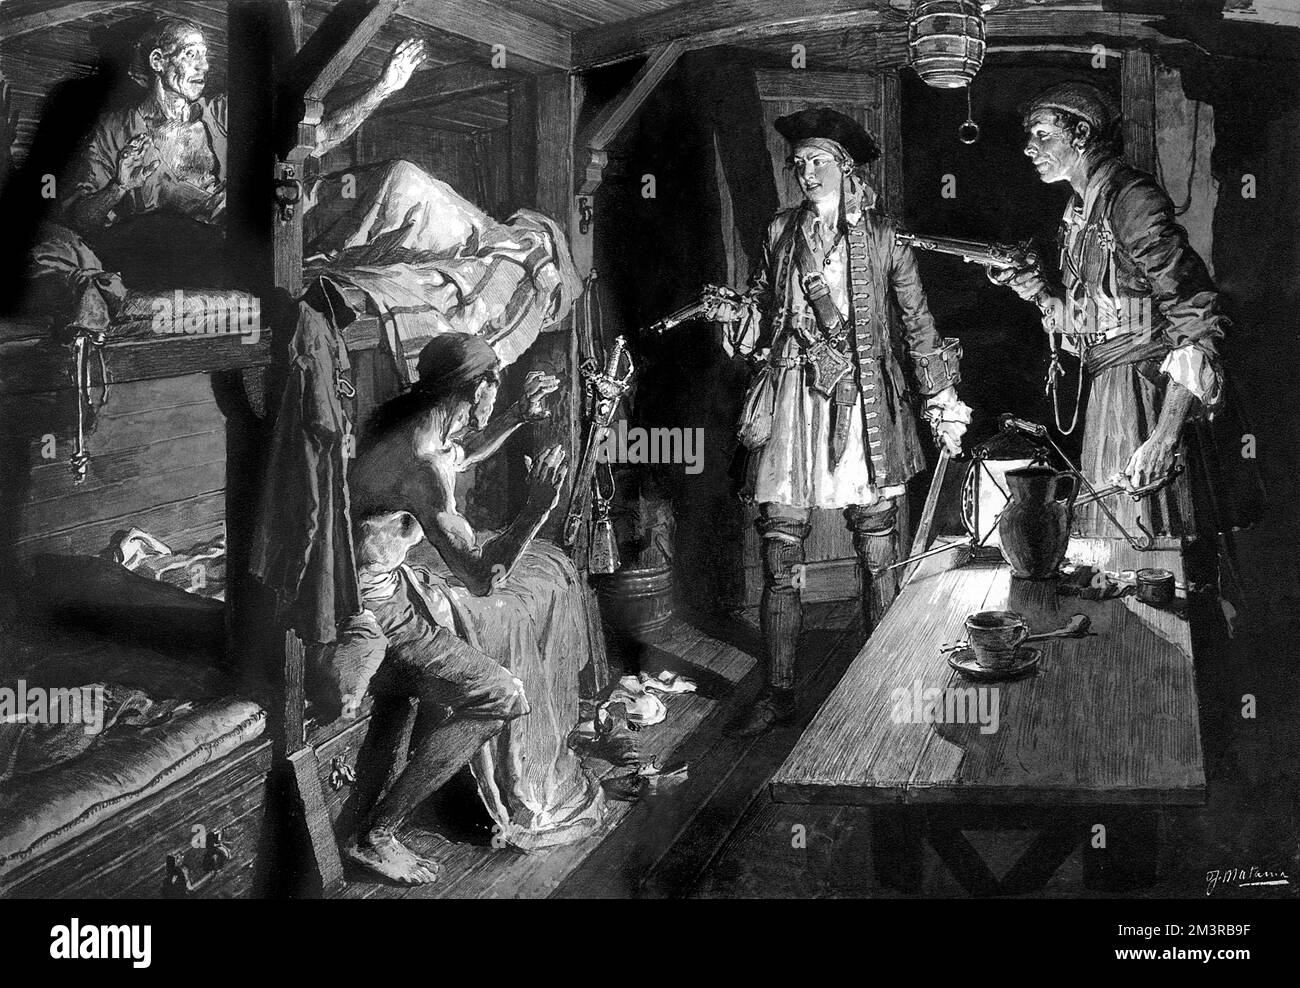 Anne Bonny, auch bekannt als Bonney (c.1700-1782), berühmte Freibeuter, abgebildet in einer Schiffskabine, die ihre Pistole auf zwei ahnungslose Matrosen in ihren Kojen unter Deck richtet. Datum: c.1725 Stockfoto